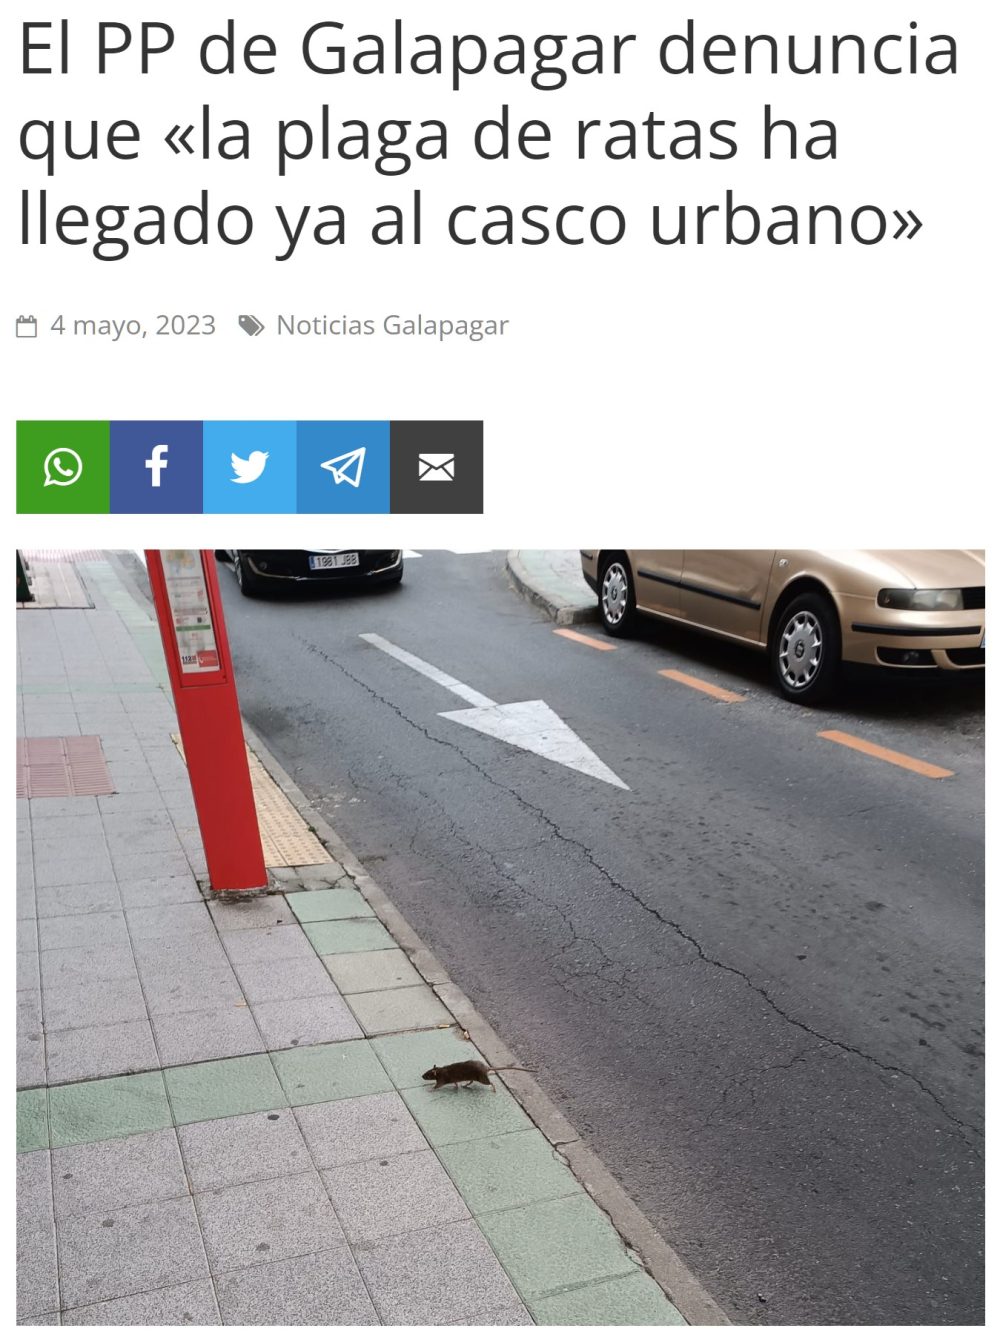 "El PP ha denunciado que la plaga de ratas que comenzó en La Navata ha llegado ya al casco urbano de Galapagar"